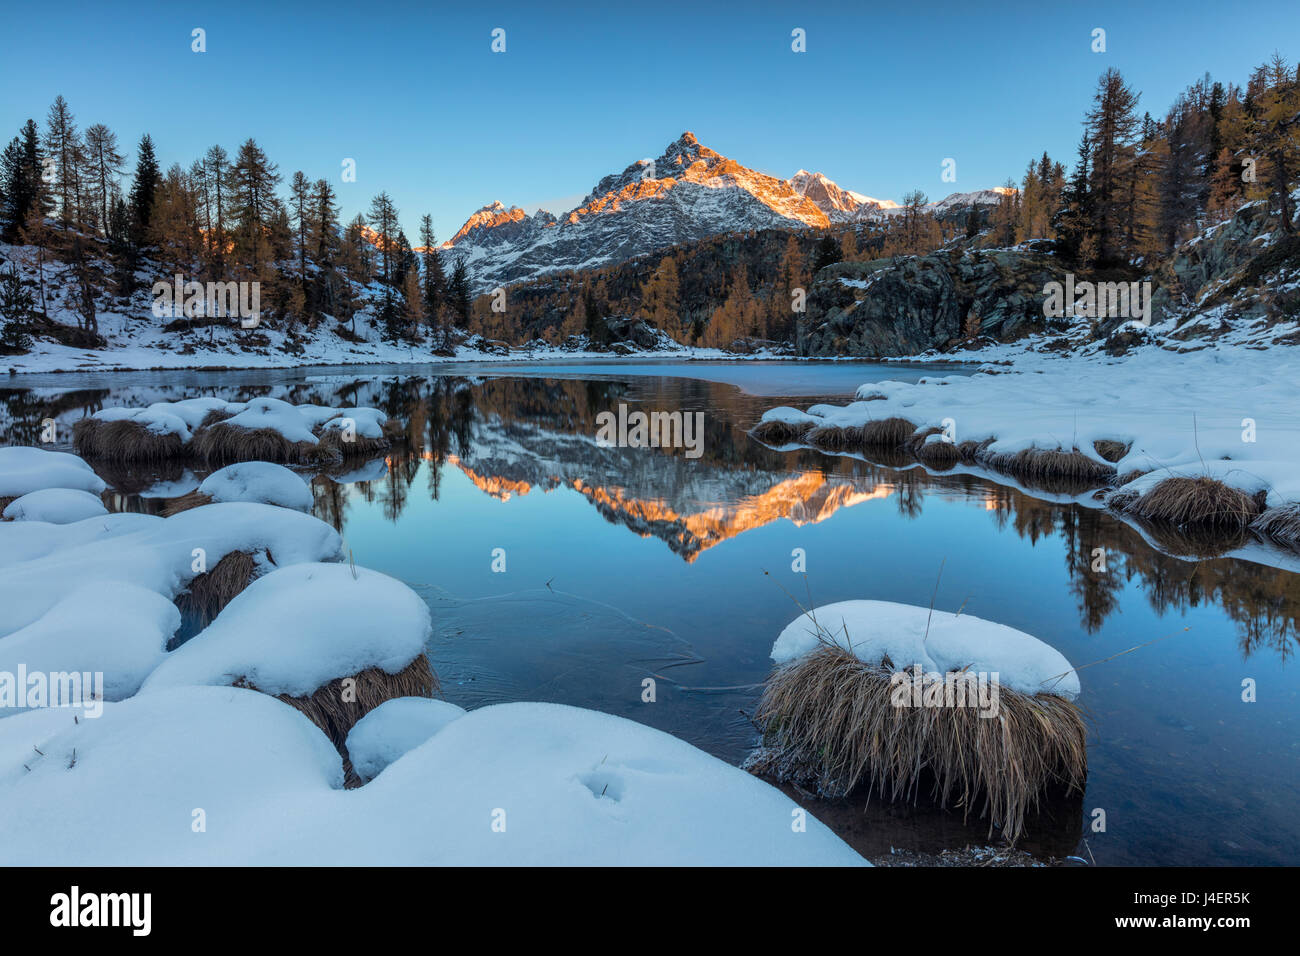 Le pic rocheux reflété dans le lac gelé à l'aube, Mufule, Zone Val Malenco de la Valteline, province de Sondrio, Lombardie, Italie Banque D'Images